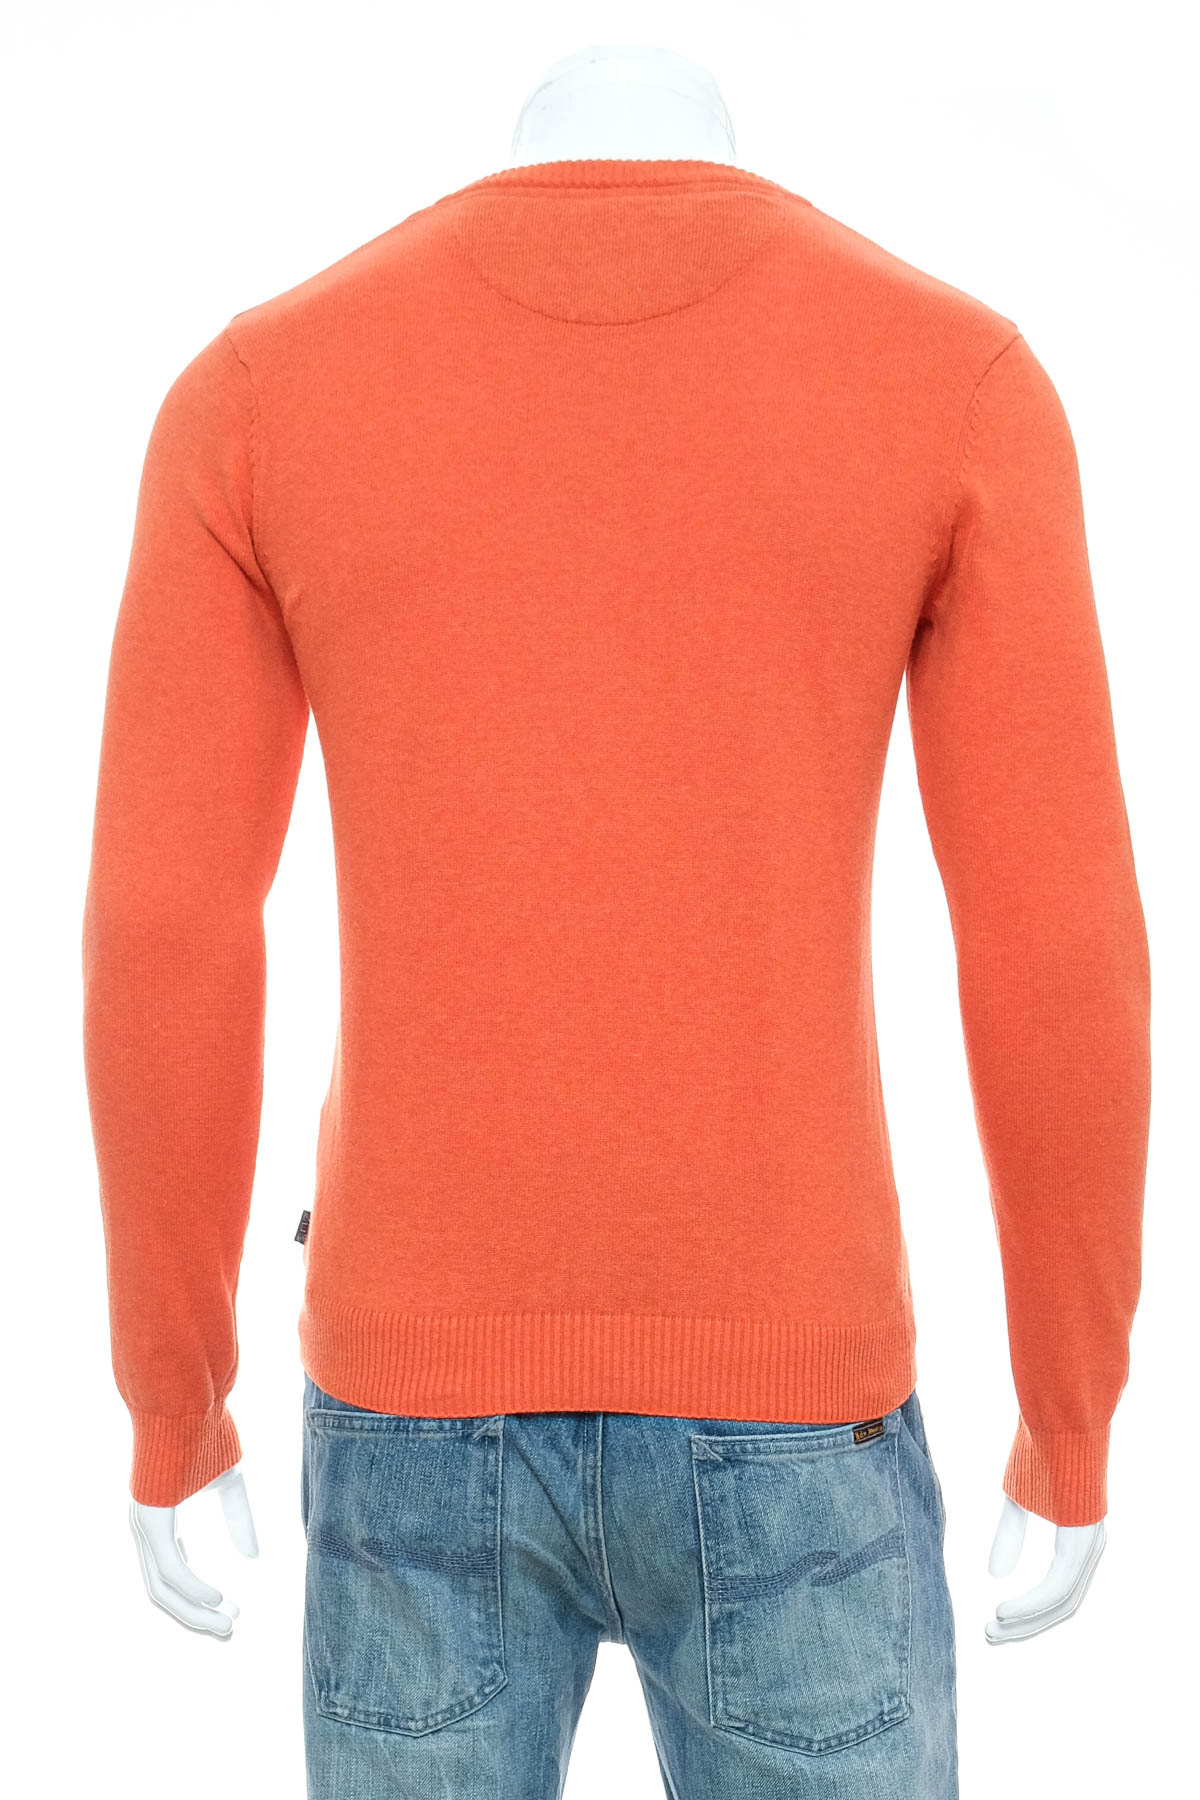 Men's sweater - Lee Cooper - 1